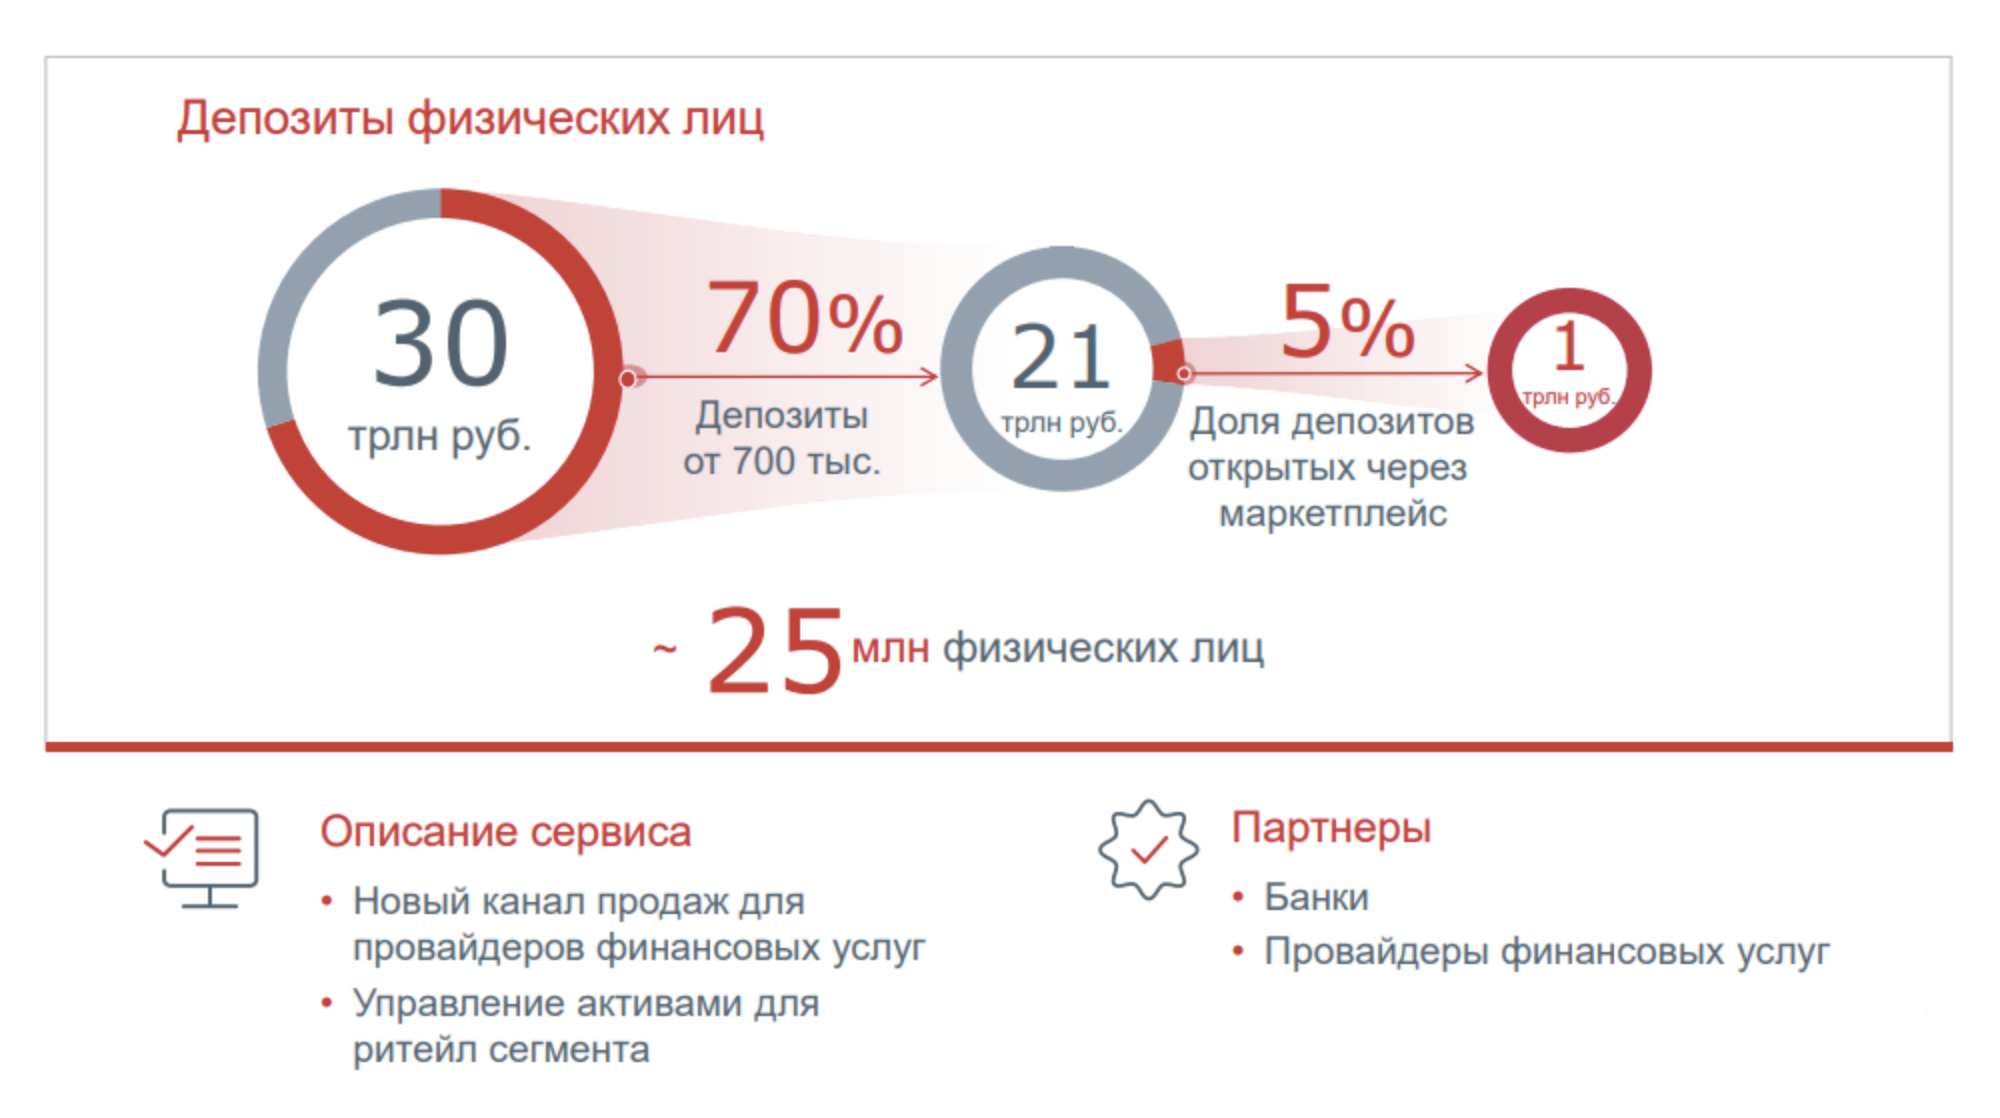 По мнению Московской биржи, частные клиенты будут открывать не меньше 5% депозитов через маркетплейс